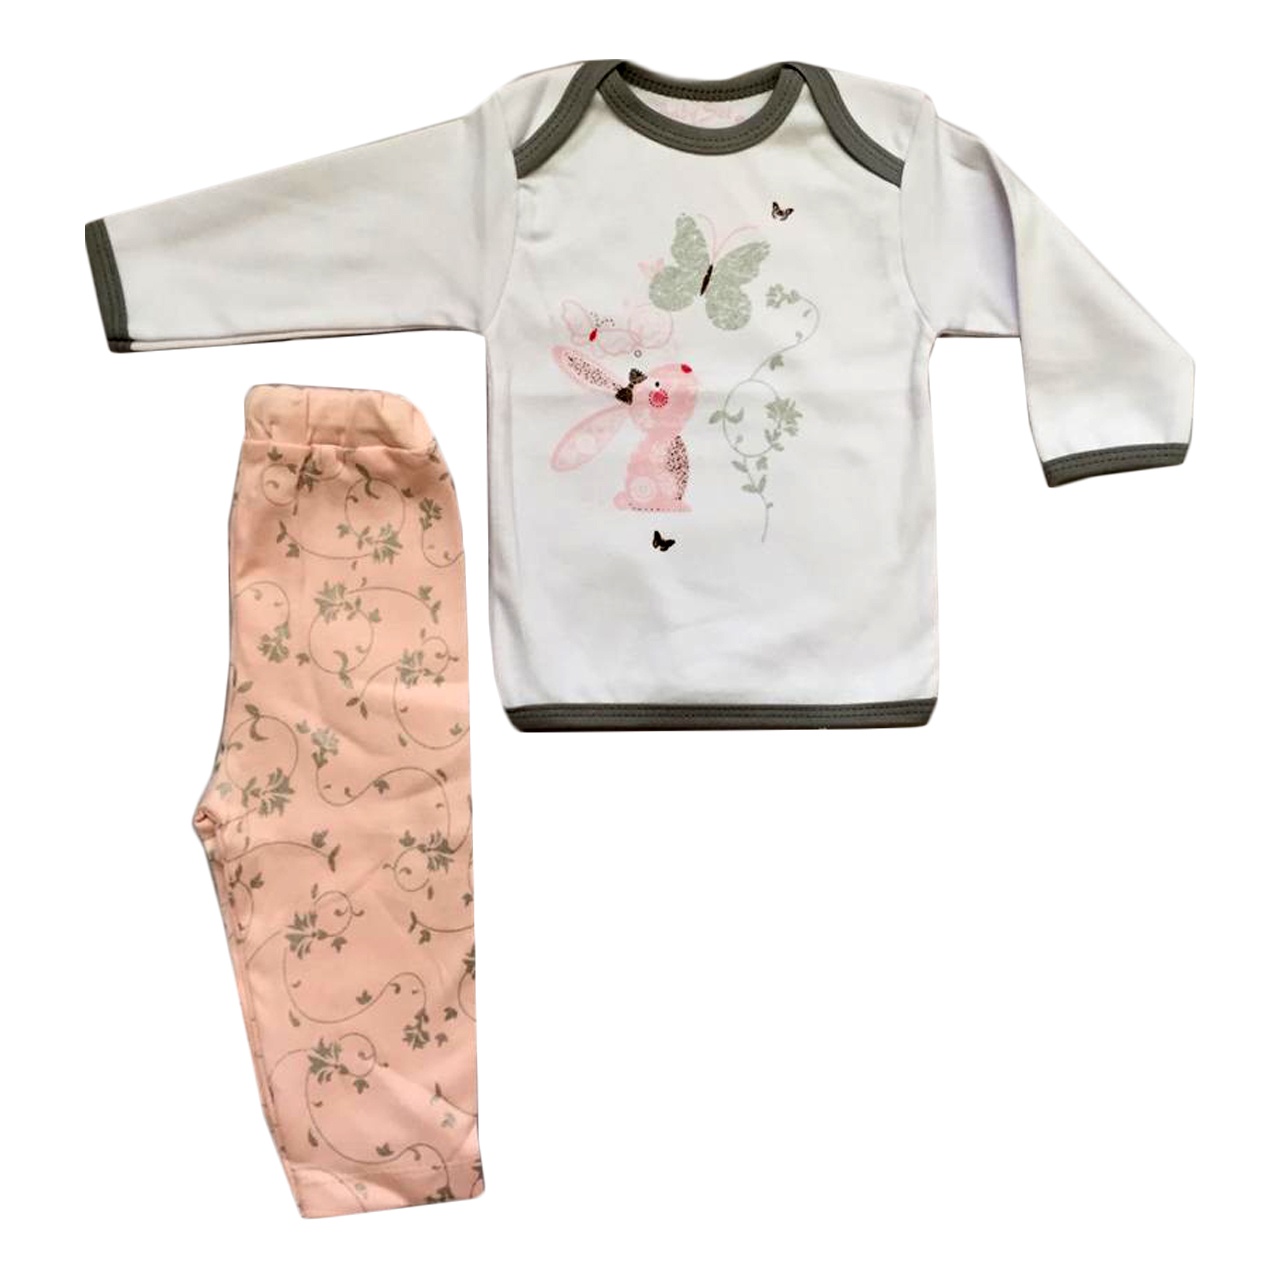 ست تی شرت و شلوار نوزادی دخترانه طرح خرگوش زیبا کد 006